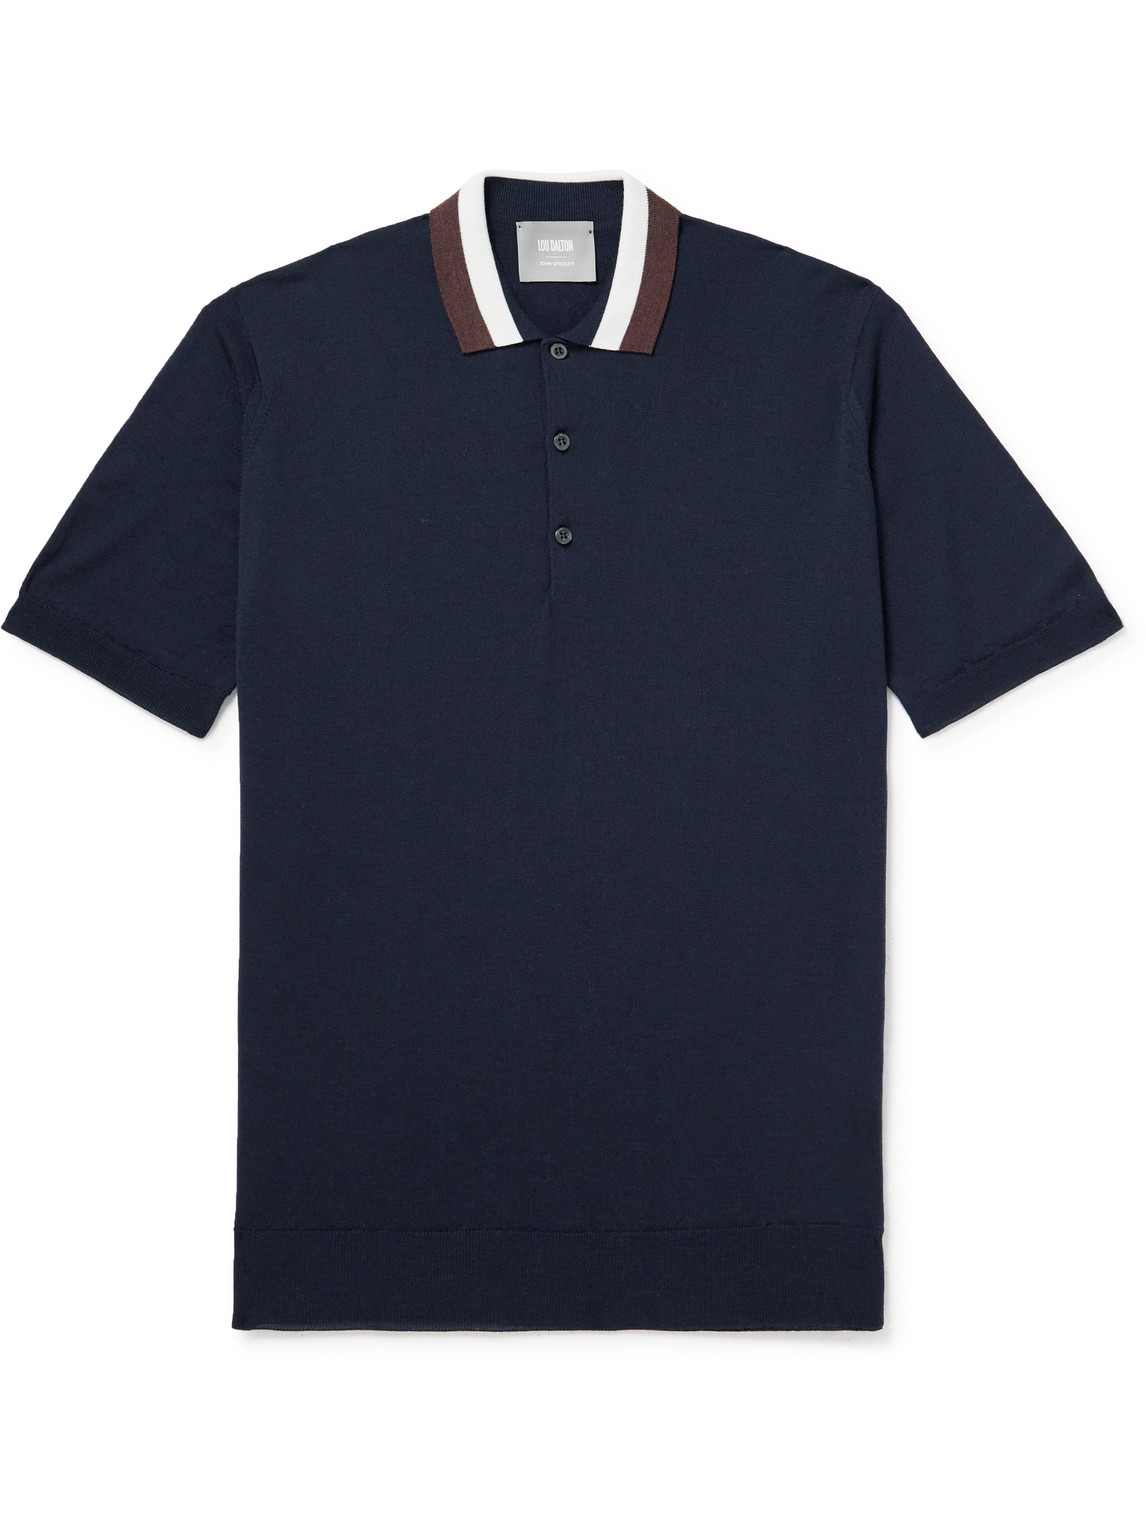 John Smedley Lou Dalton Striped Merino Wool Polo Shirt In Blue